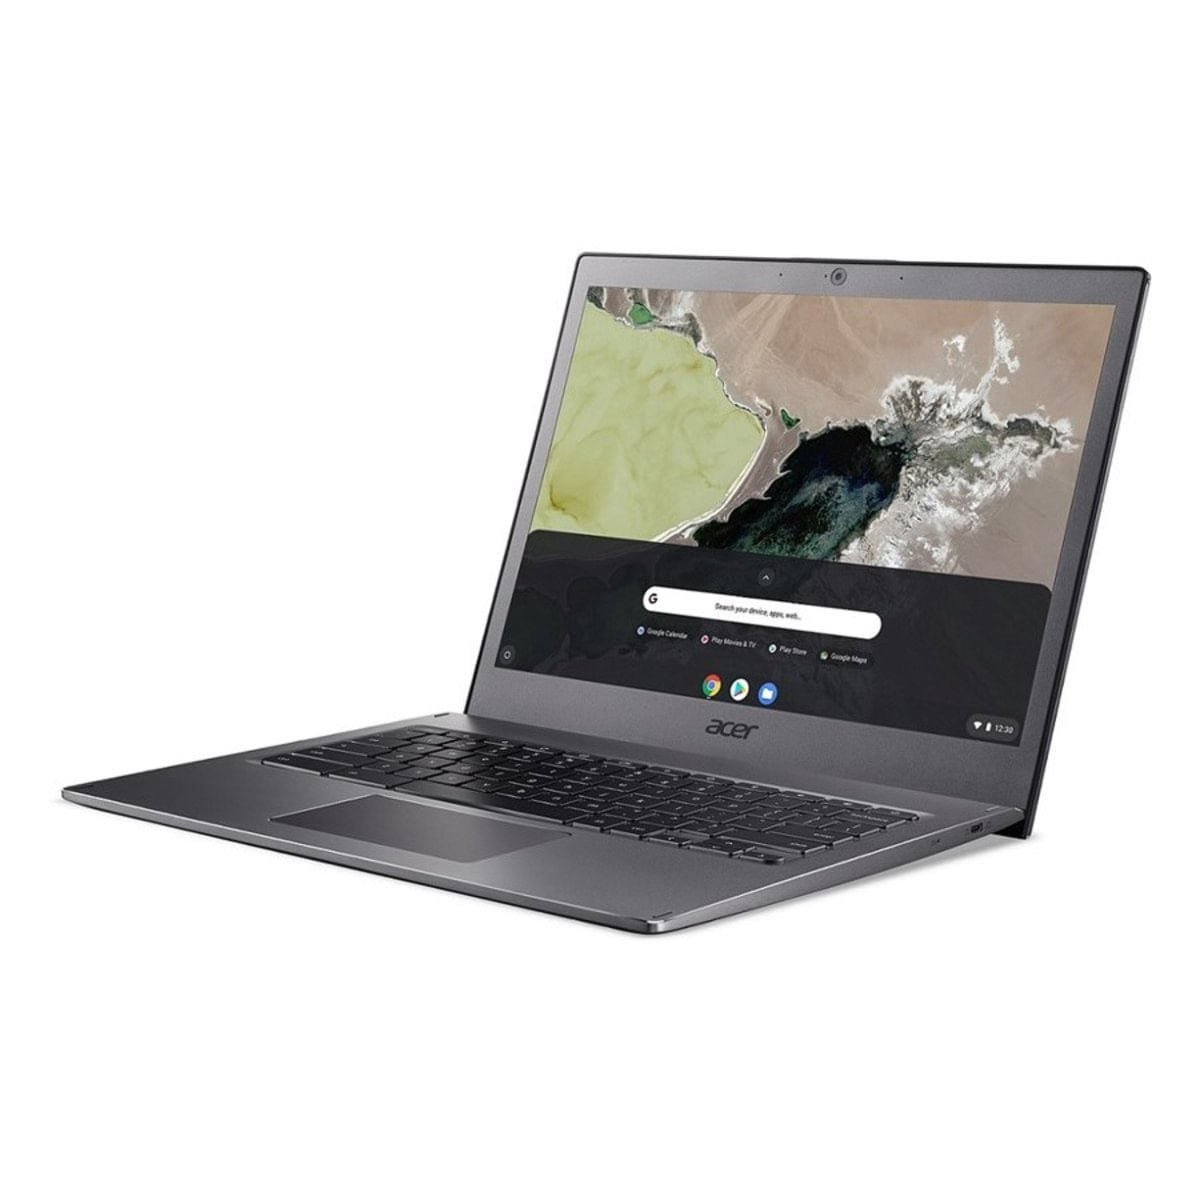 Notebook - Acer Cb713-1w-56vy I5-8250u 3.40ghz 8gb 64gb Padrão Intel Hd Graphics 520 Google Chrome os Chromebook 13,5